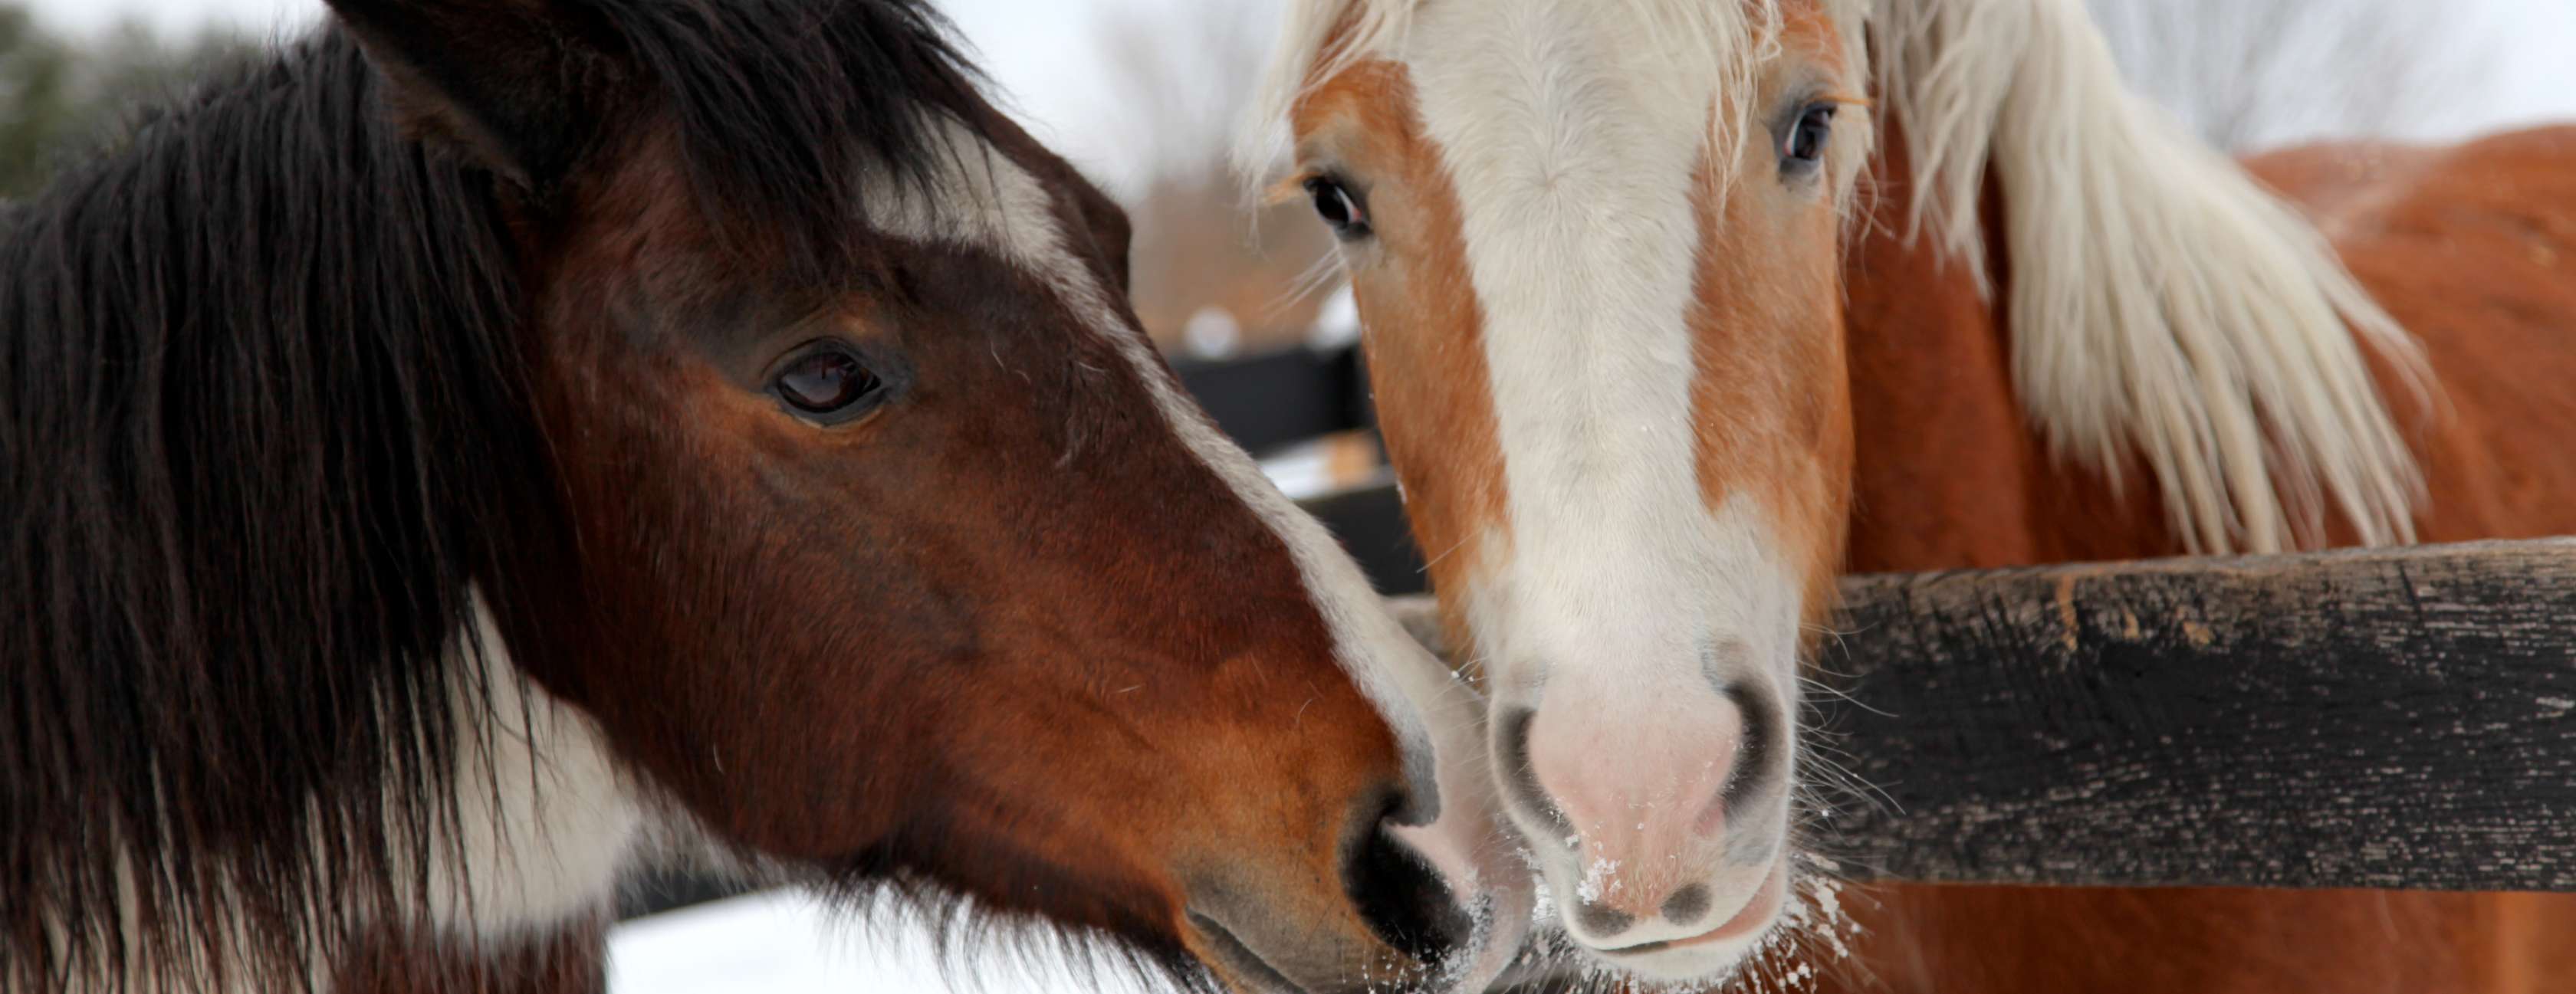 Allianz - Pferdeschur: Zwei junge Pferde blicken über Holzzaun